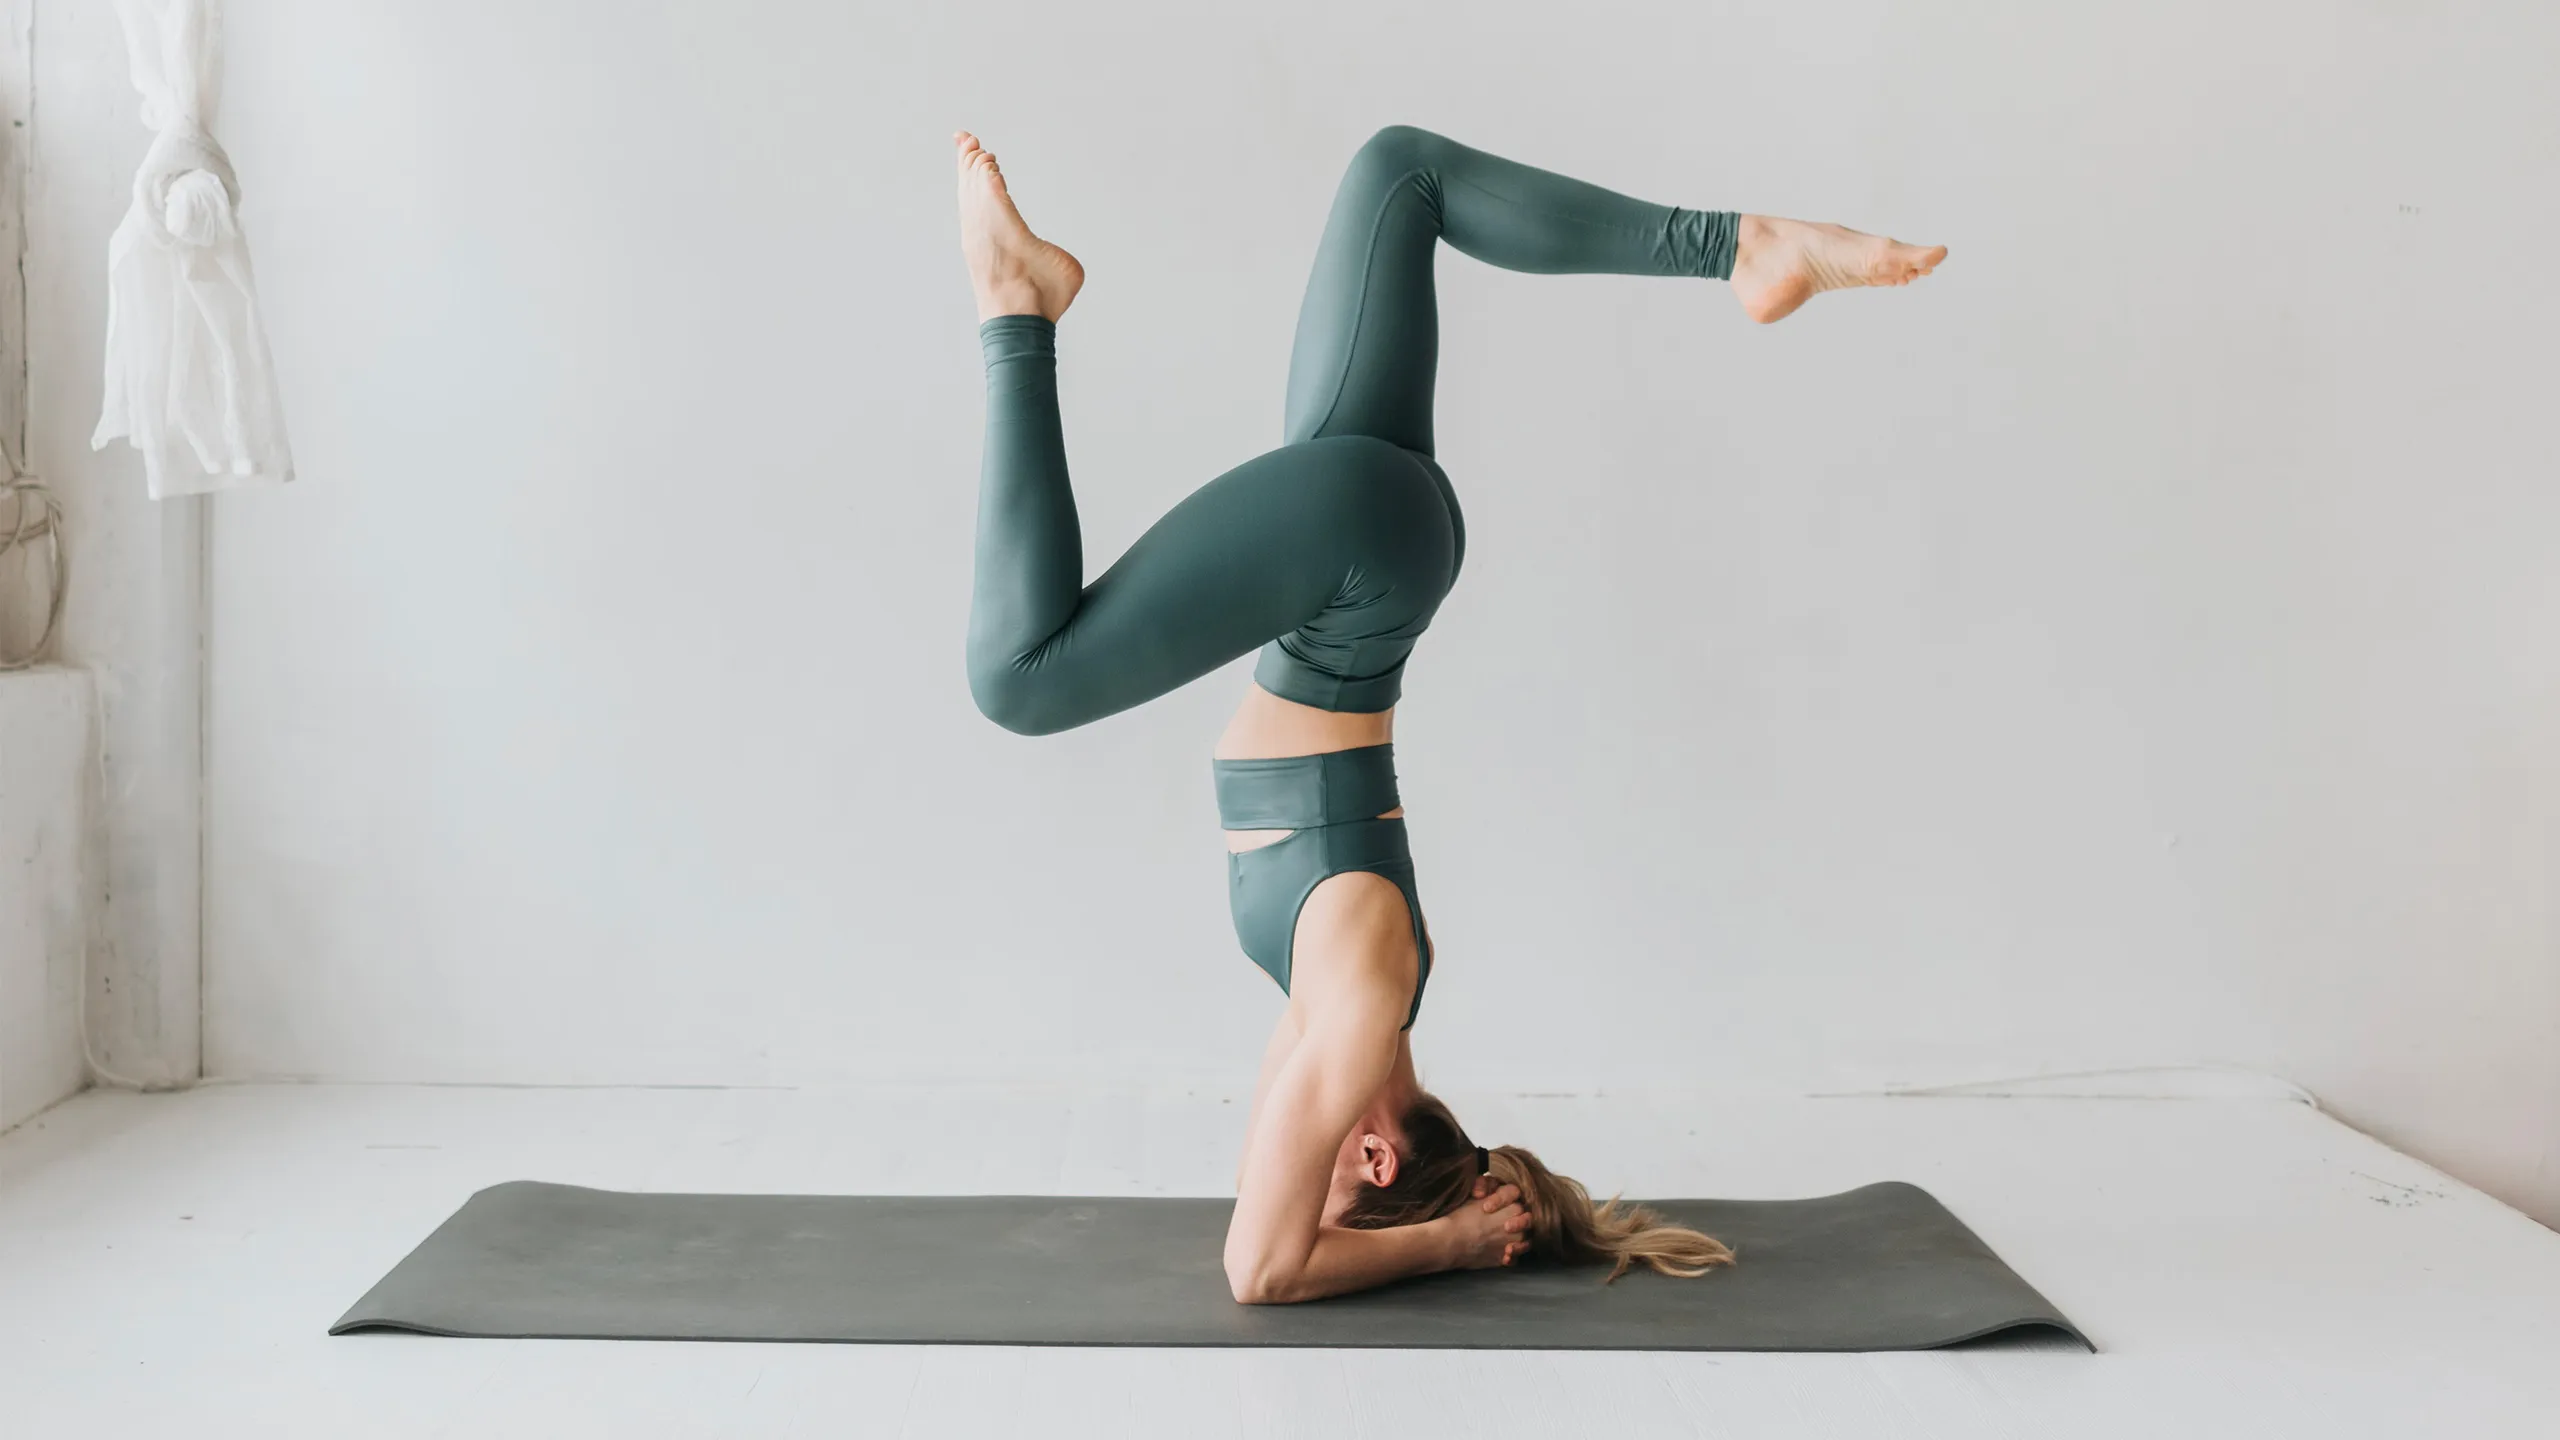 Yoga Terapéutico: Beneficios Para Salud Y Bienestar